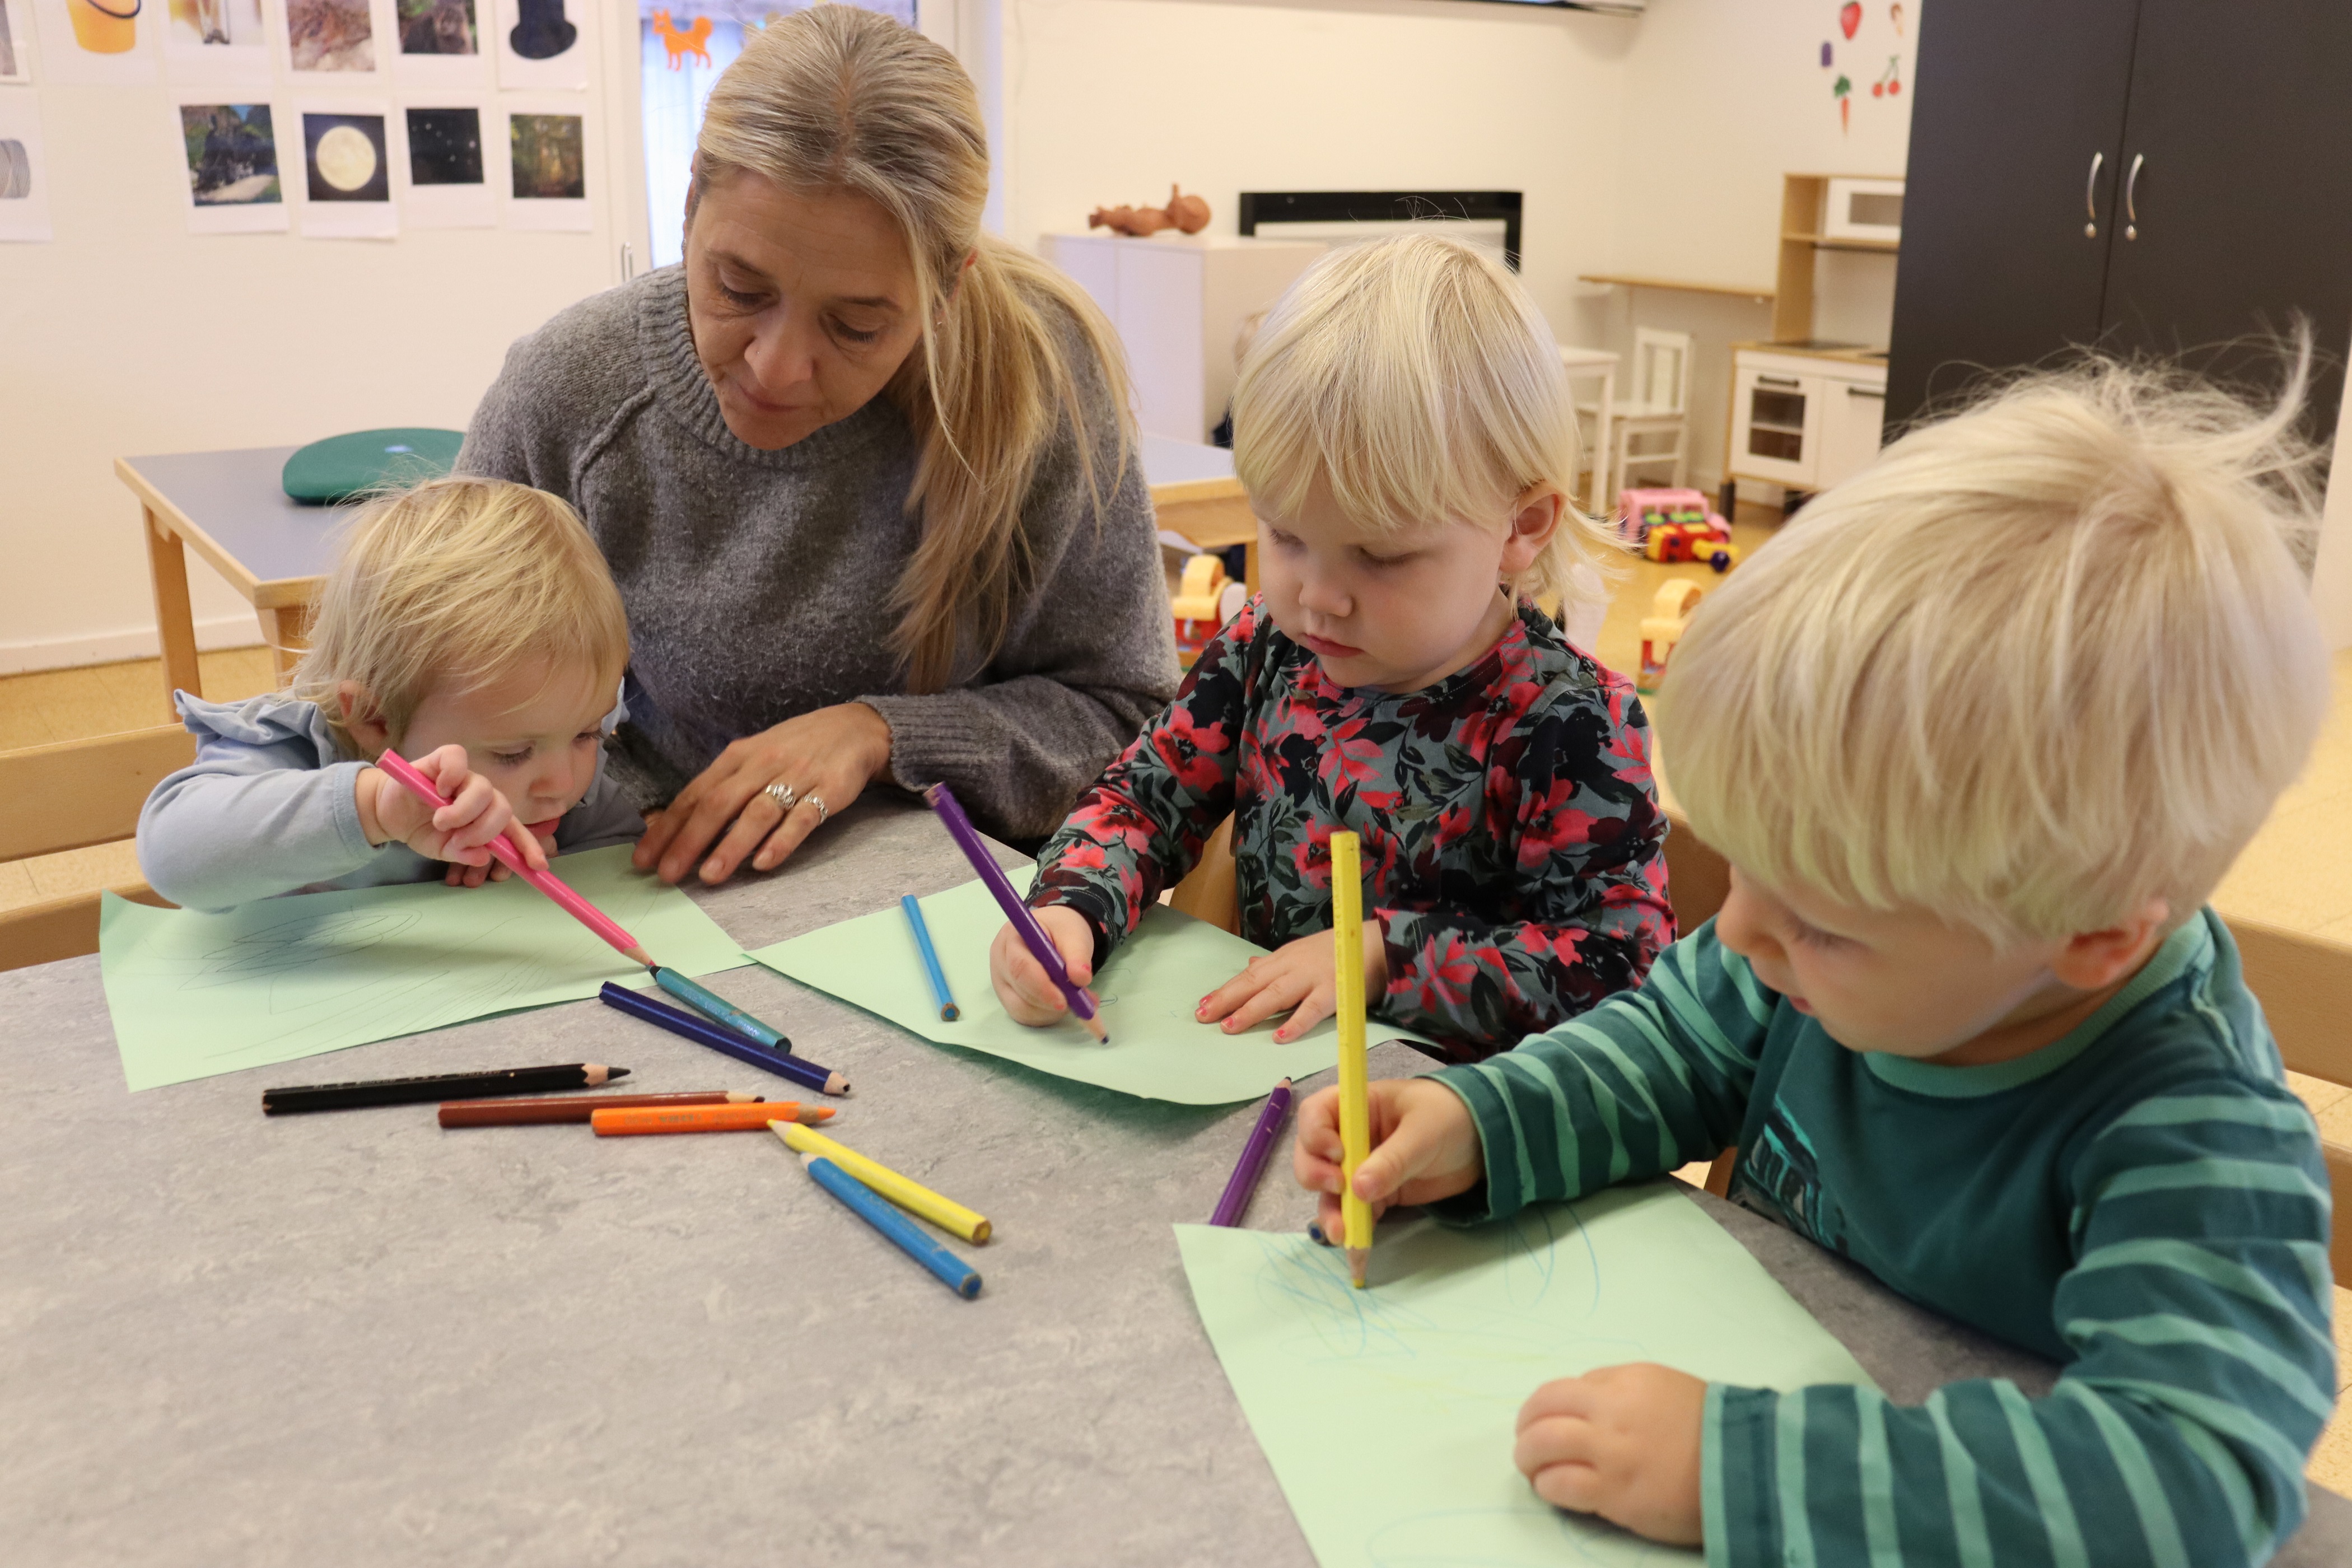 Pædagog sidder med barn og hjælper med at farve med farveblyanter, hvor der også sidder andre børn og farver